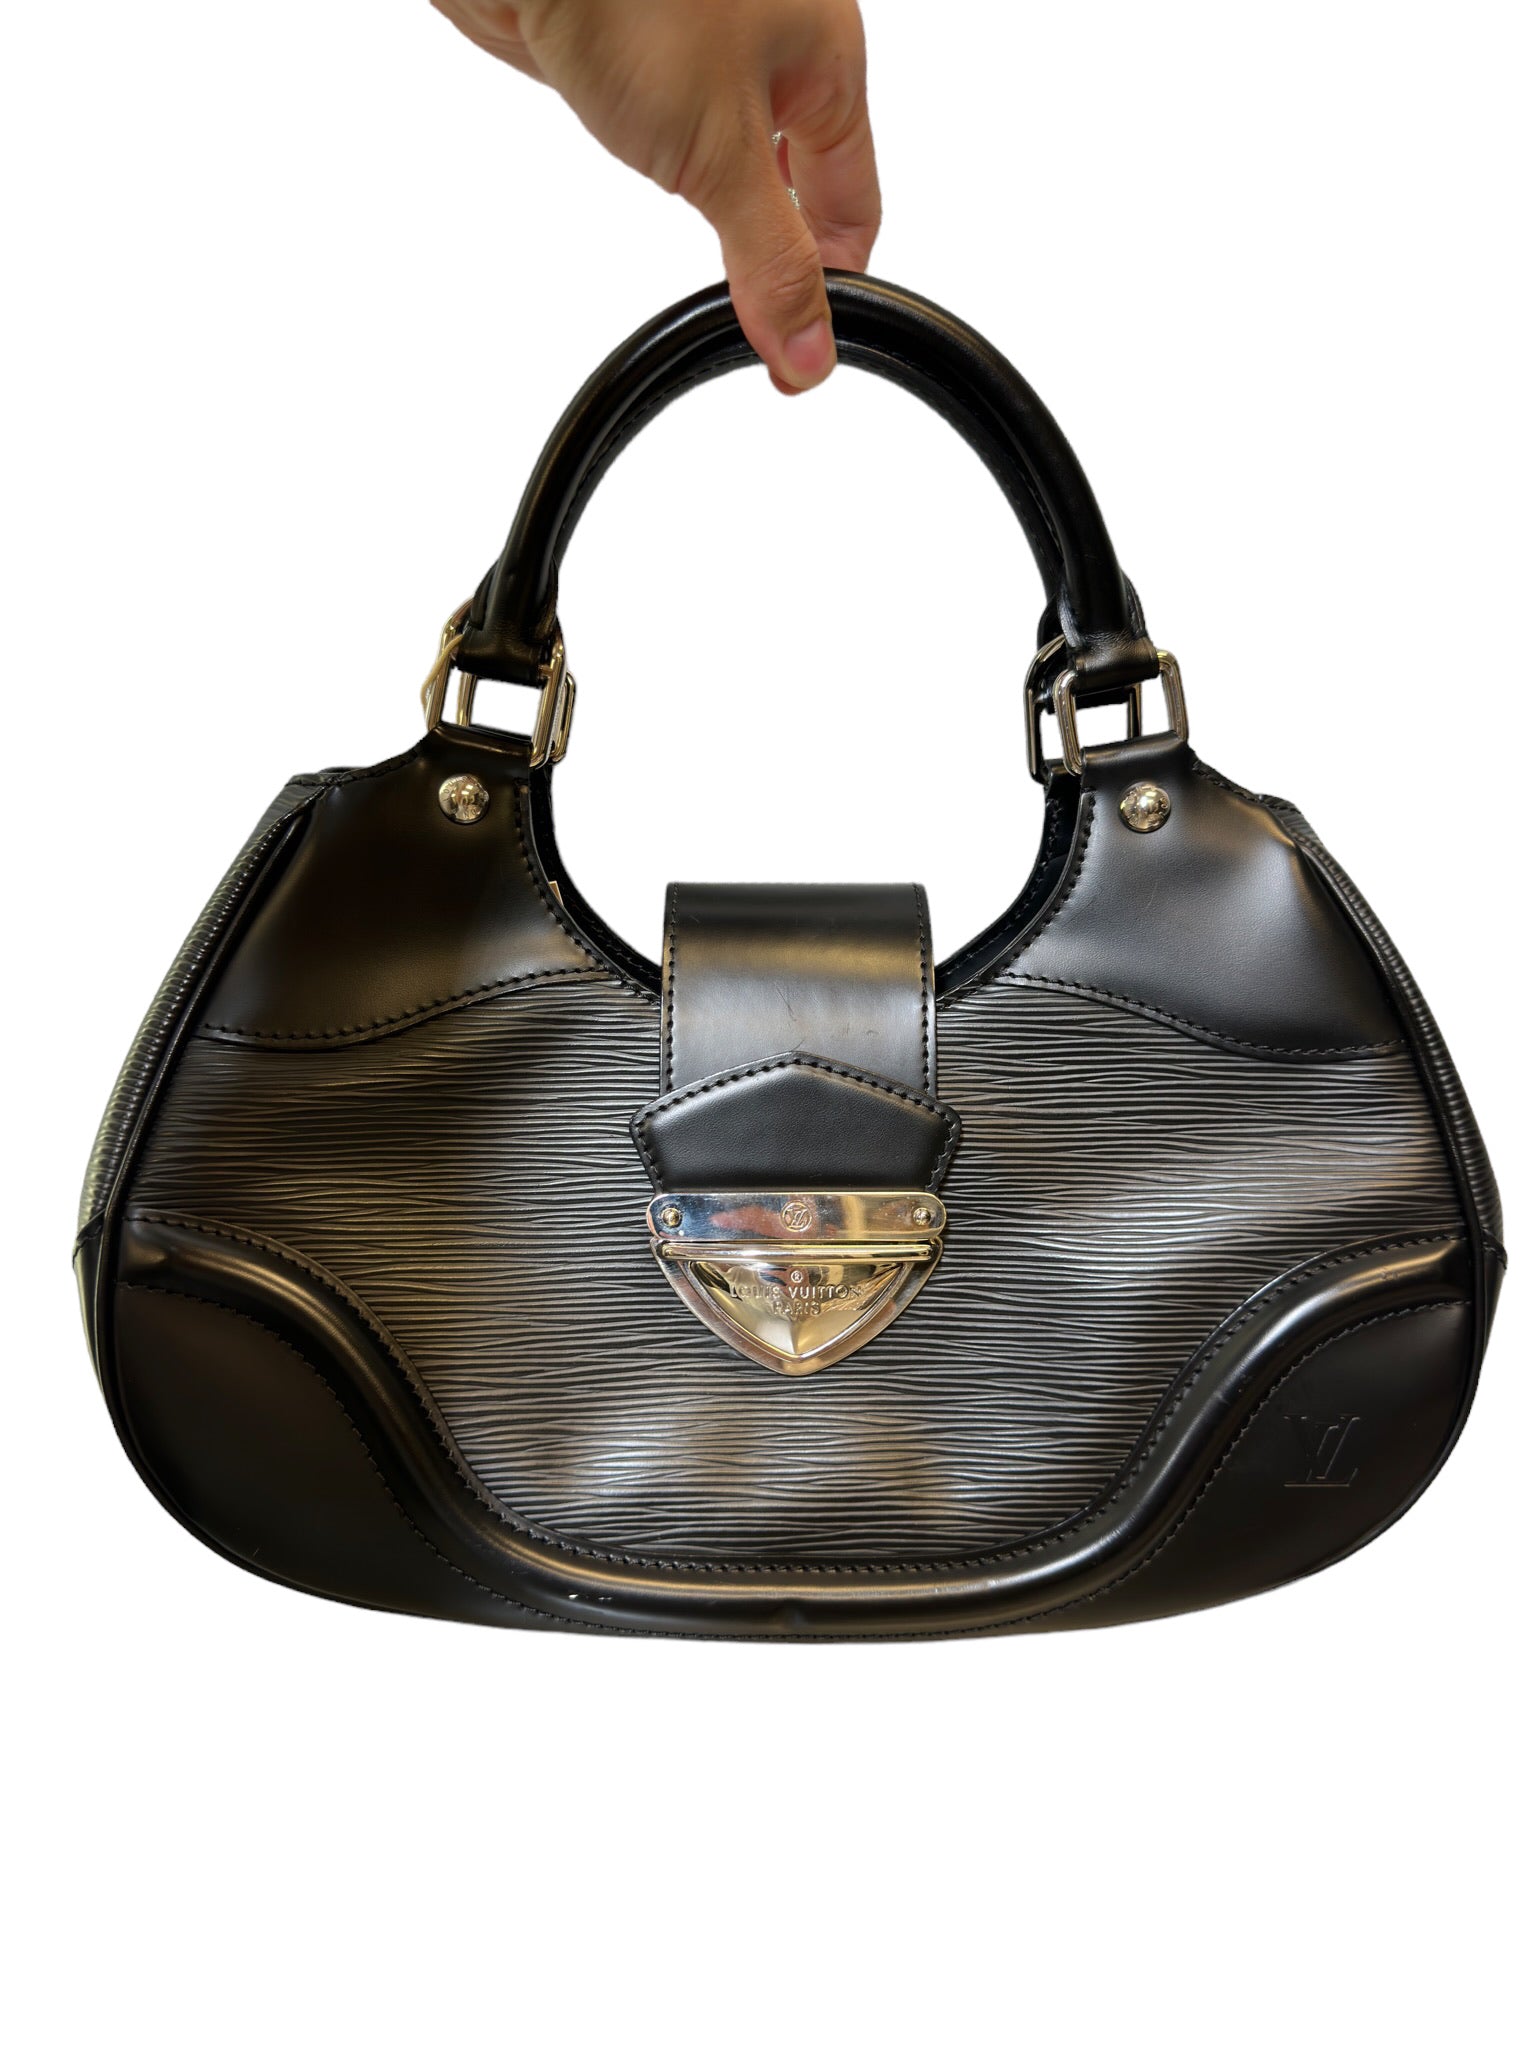 LOUIS VUITTON - Black Epi Leather Sac Montaigne Bag